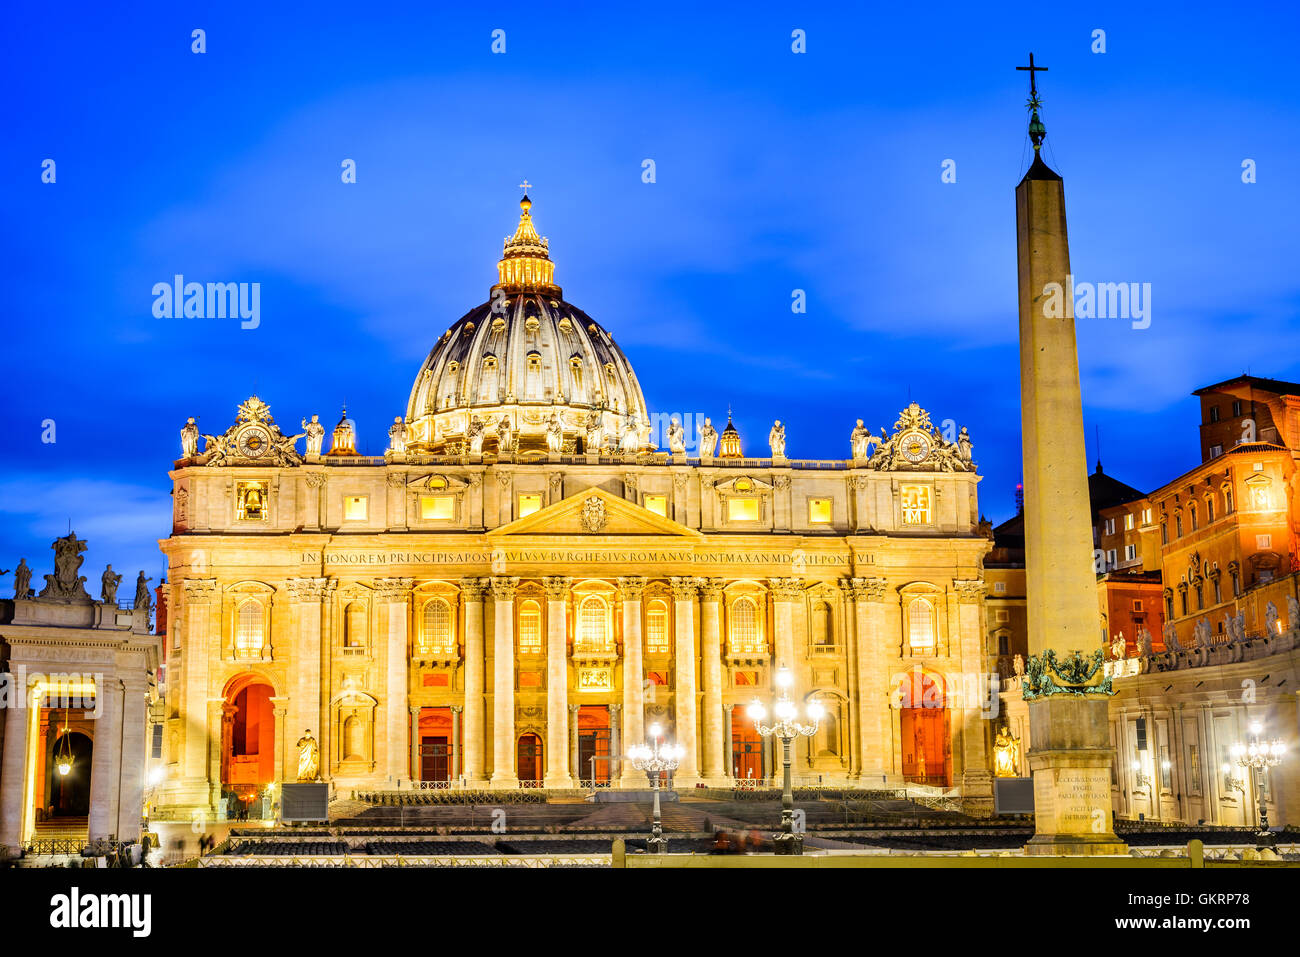 Roma, Italia. La Basílica de San Pedro en vista nocturna, la Ciudad del Vaticano. Hito de la ciudad de Roma, capital de Italia. Foto de stock